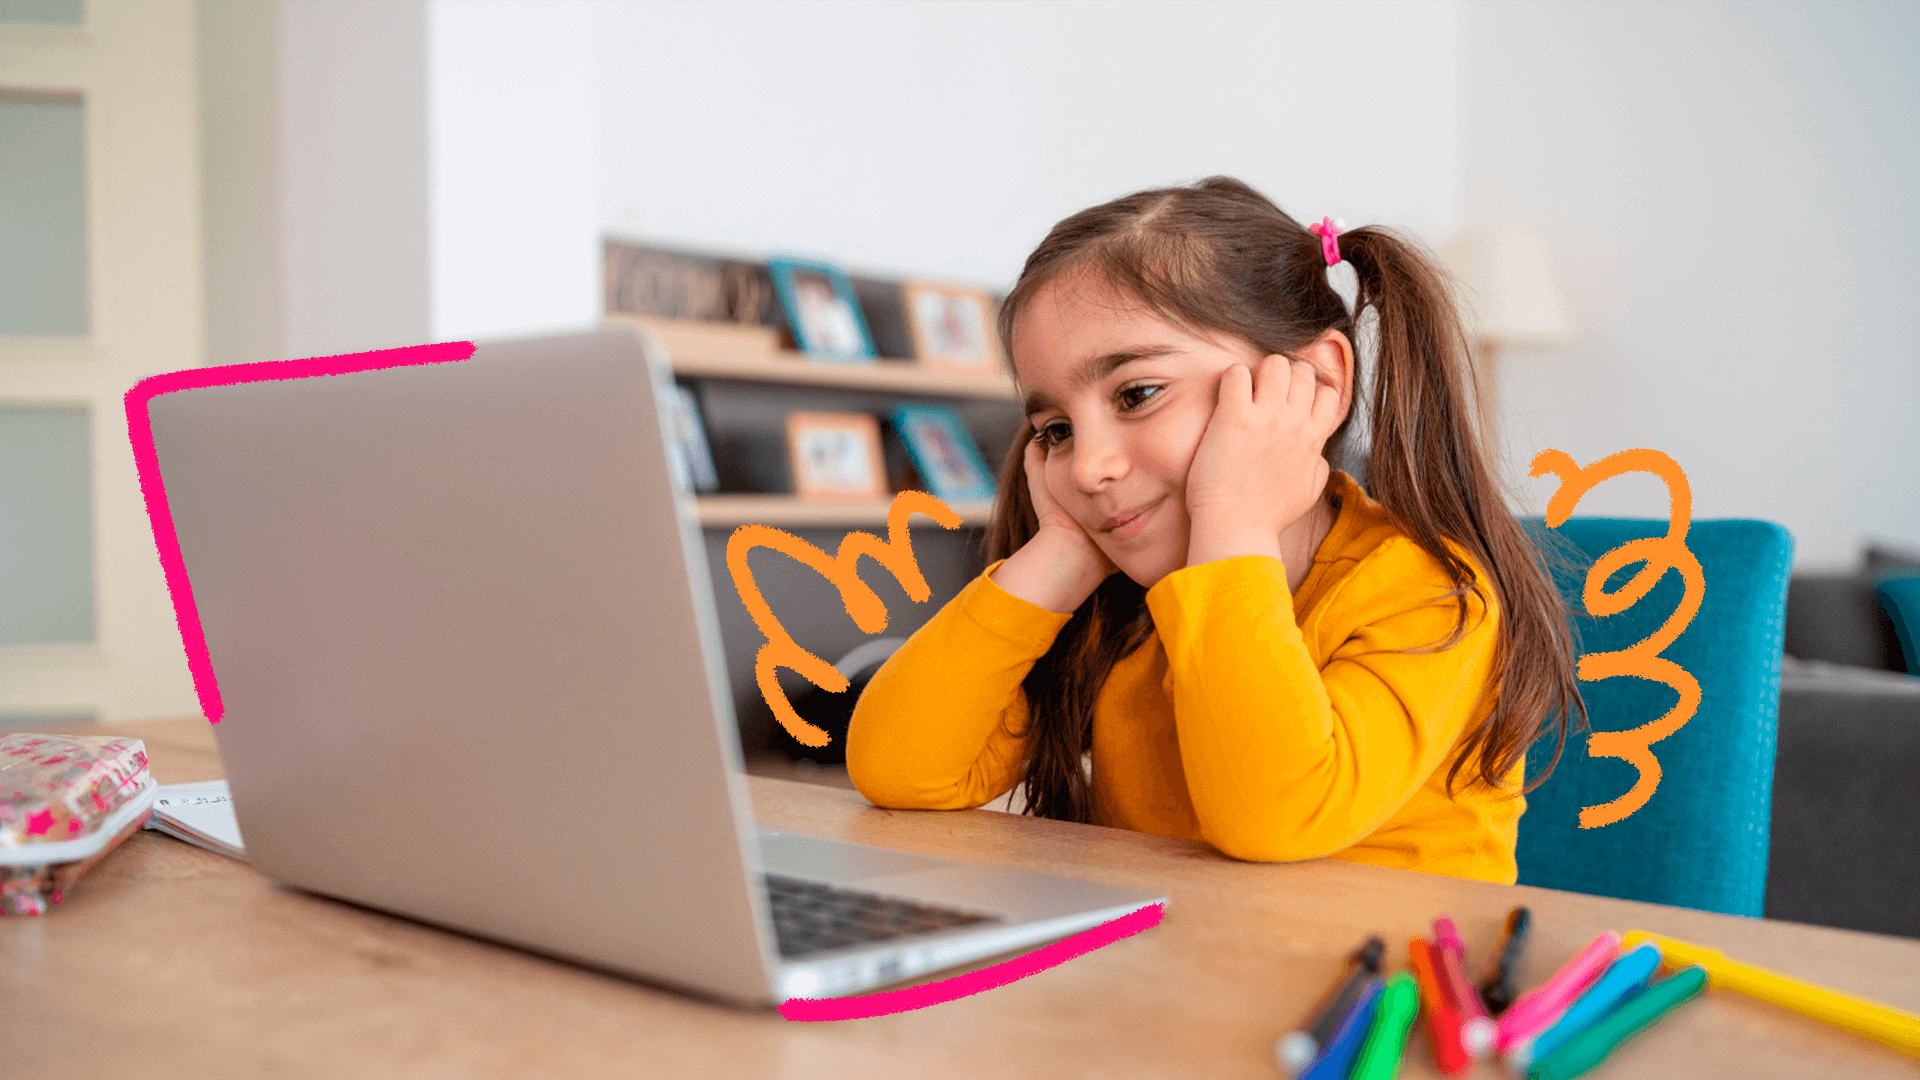 Imagem de capa para reportagem sobre o uso de IA para terapia com crianças mostra uma menina branca, de cabelos lisos, vestindo camisa amarela. Ela está sentada na frente de um notebbok.